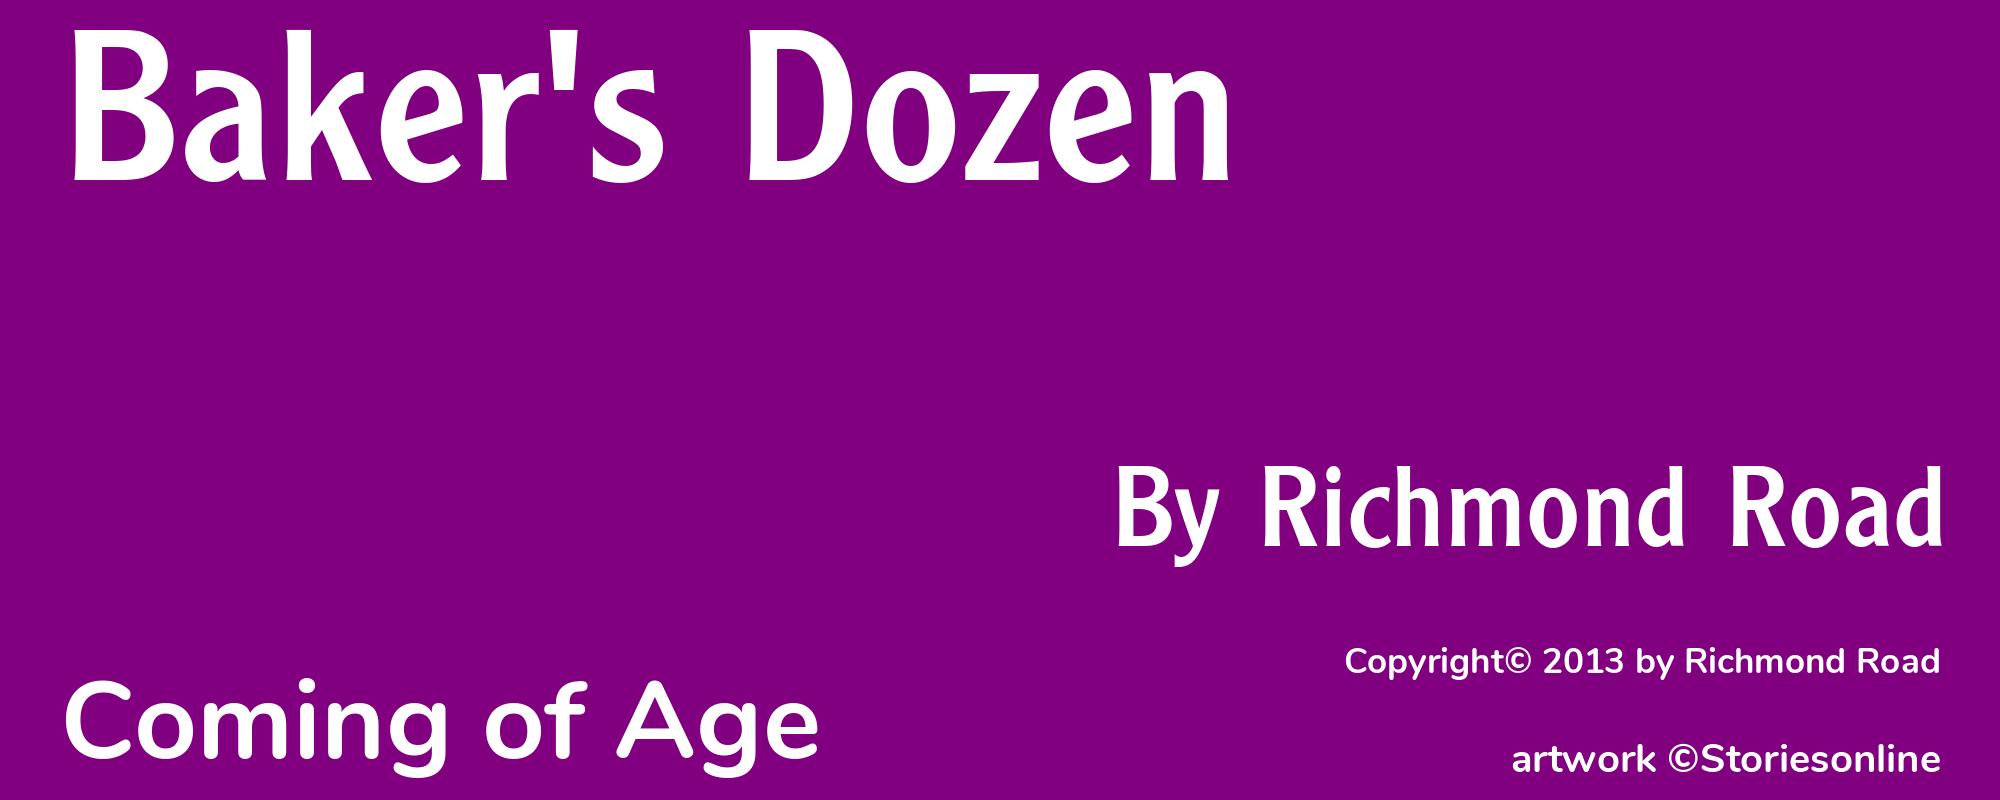 Baker's Dozen - Cover